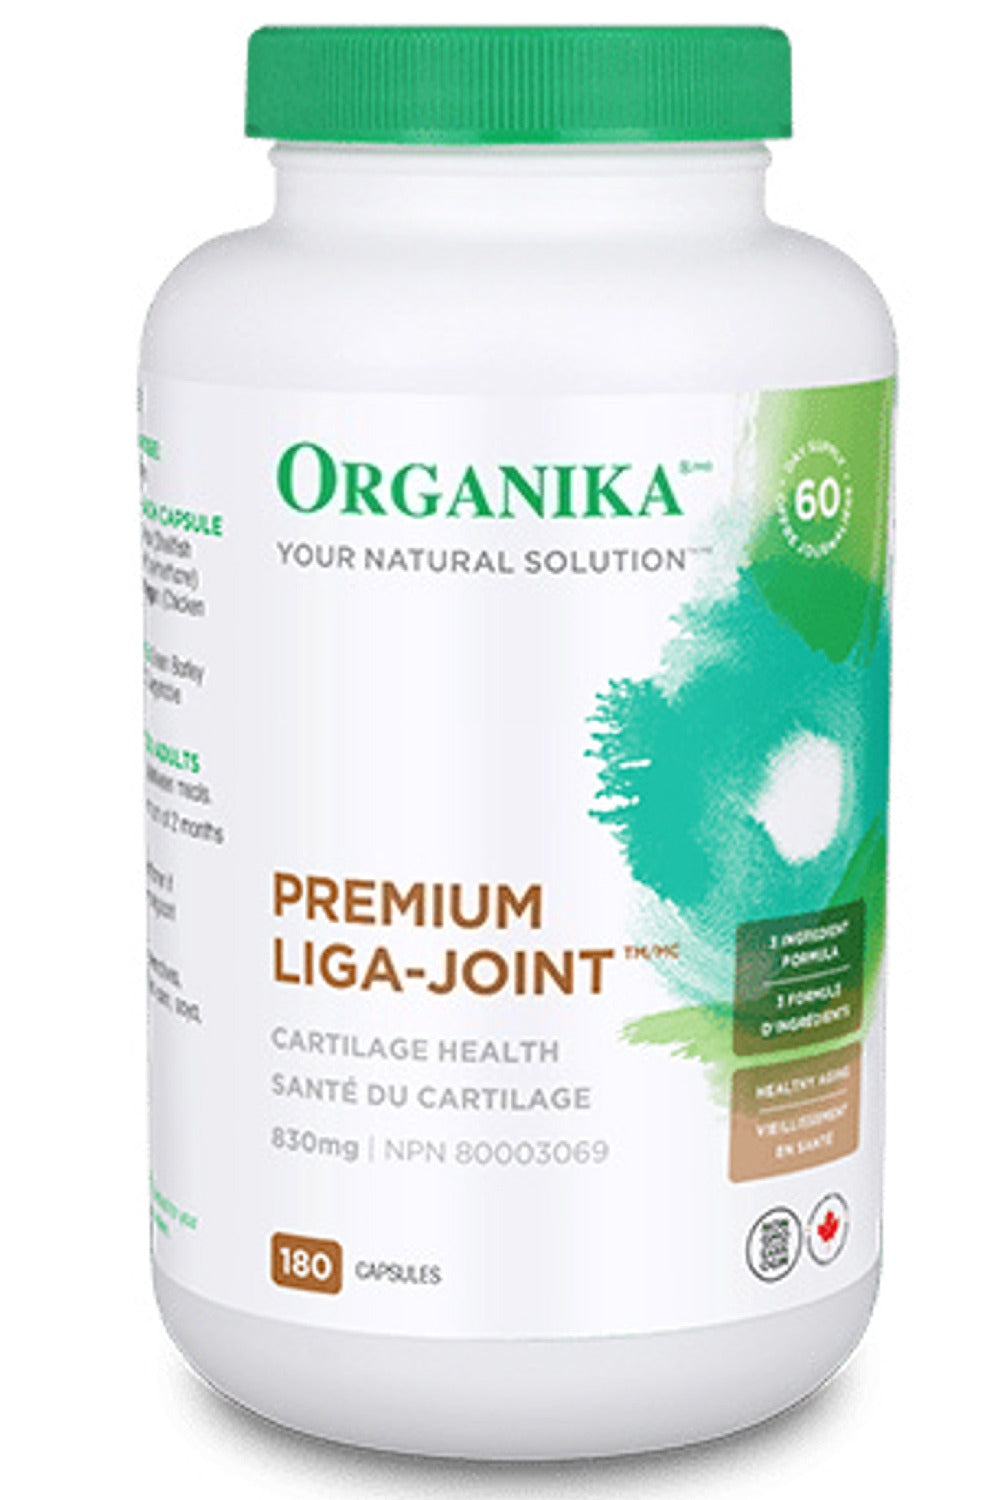 ORGANIKA Liga-Joint Premium (180 caps)